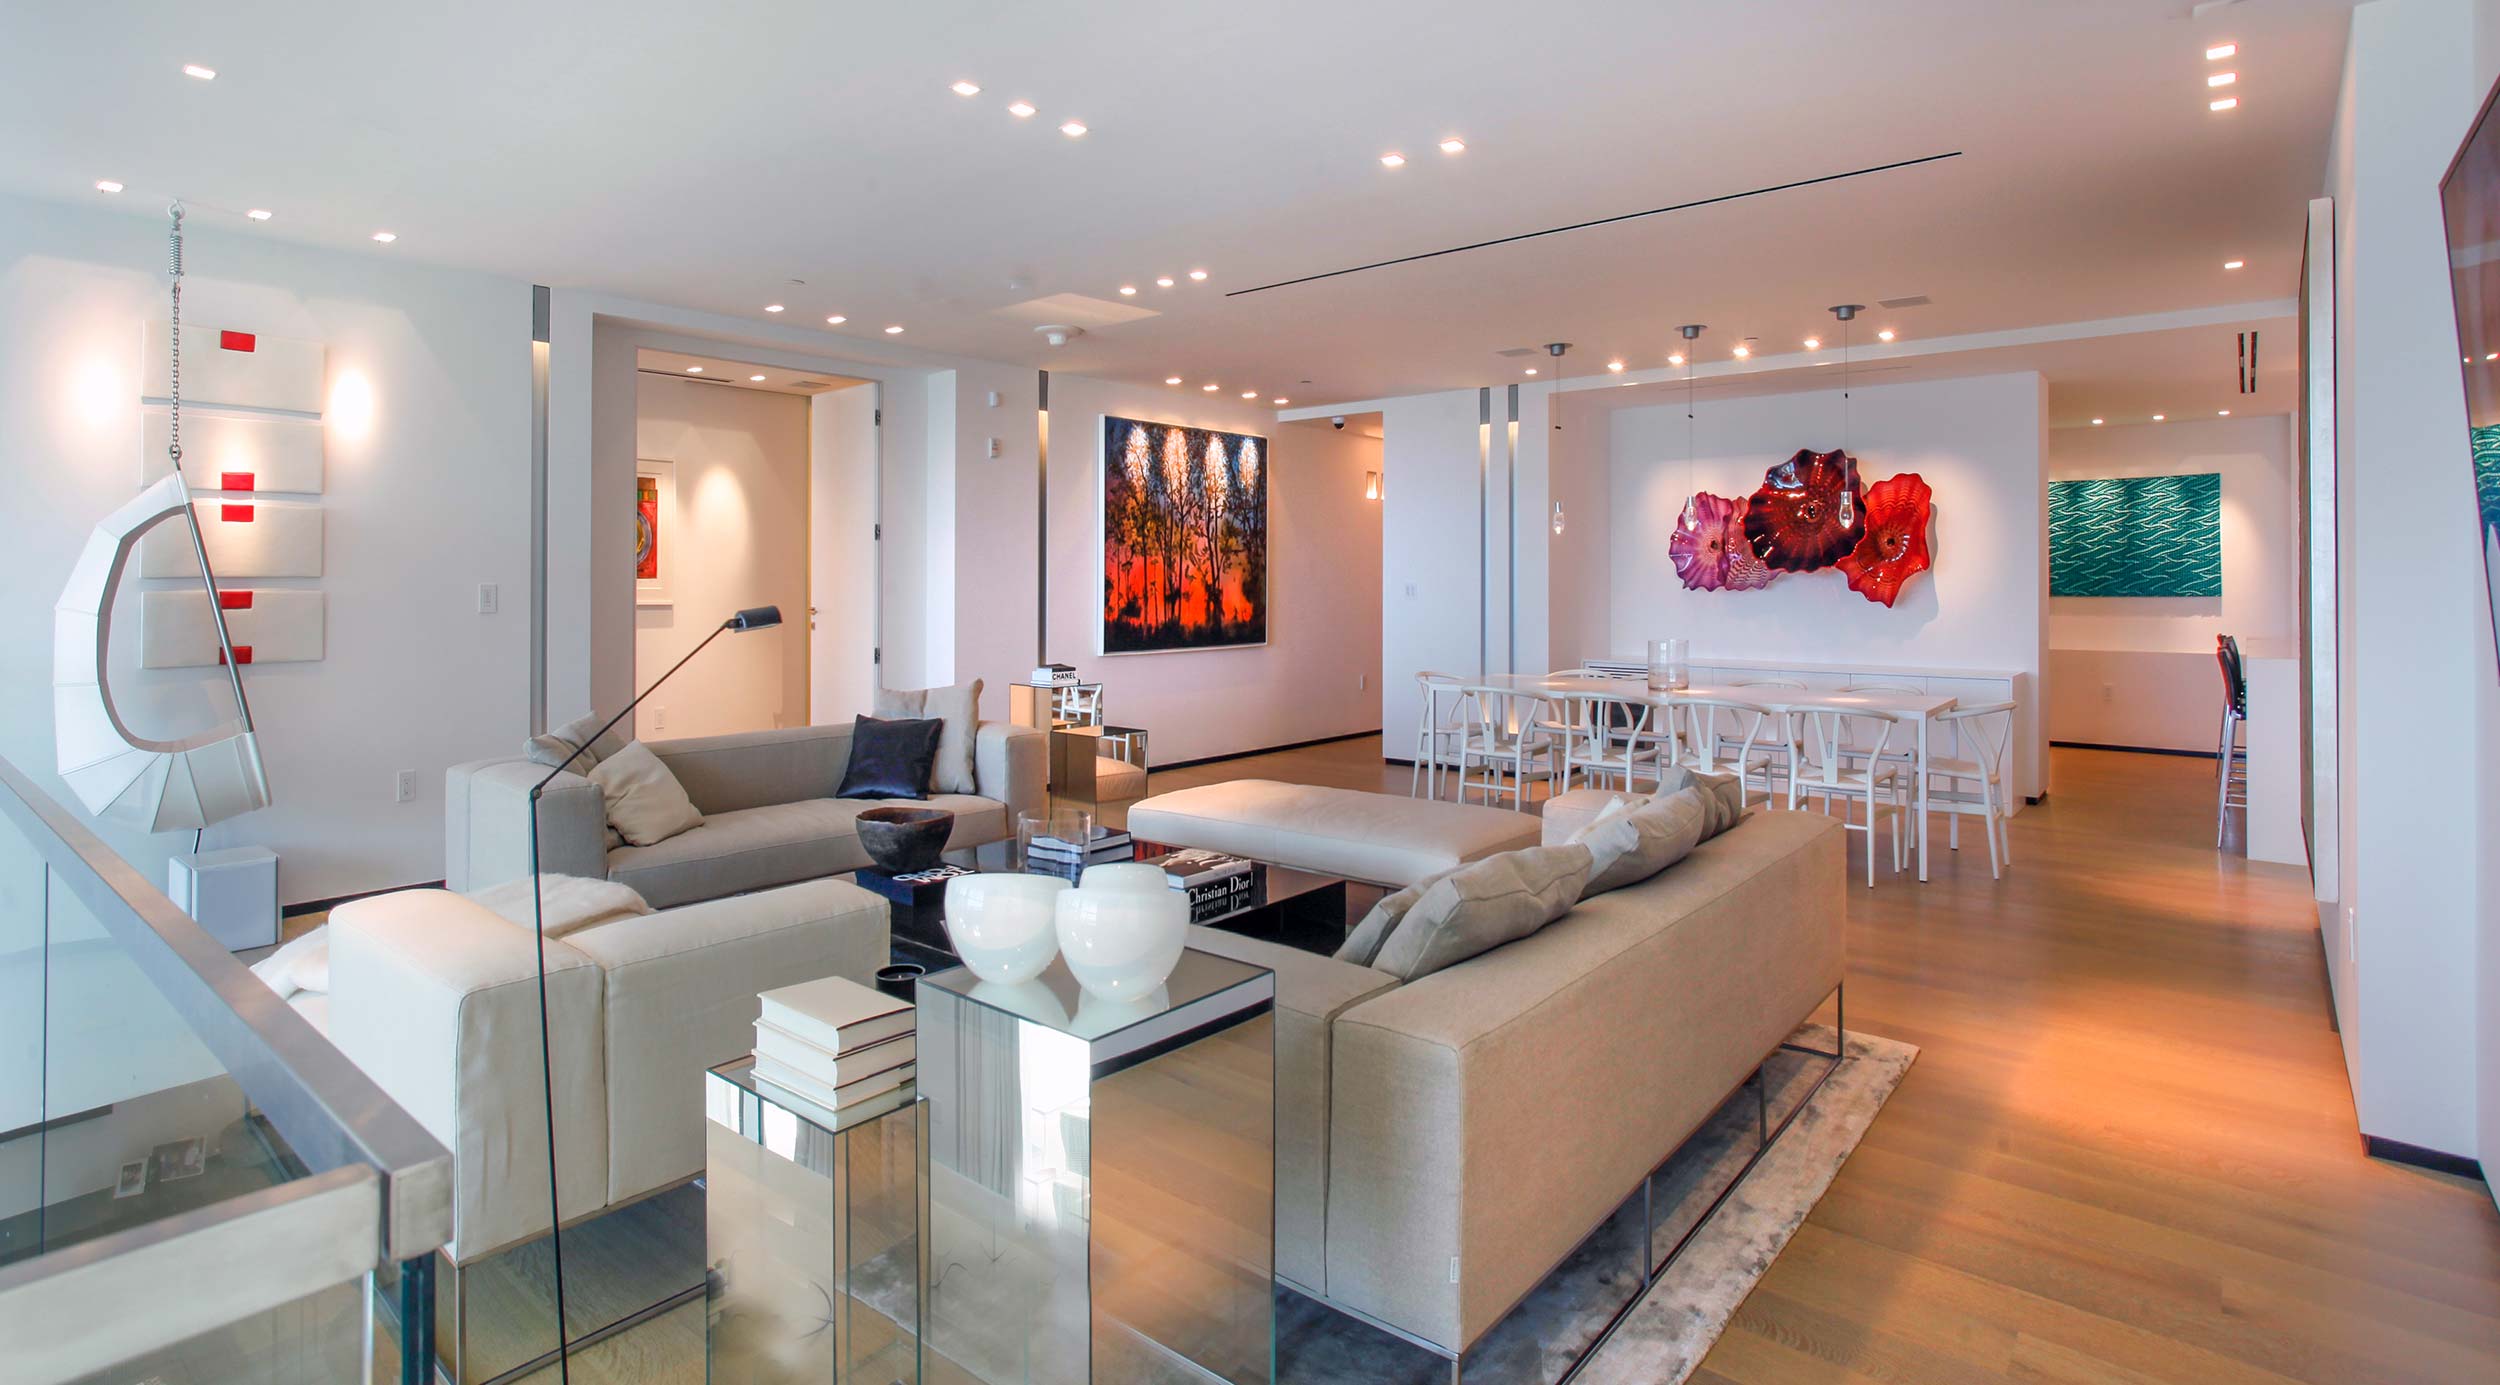 Home and Interior Designers in Miami Miami Architects